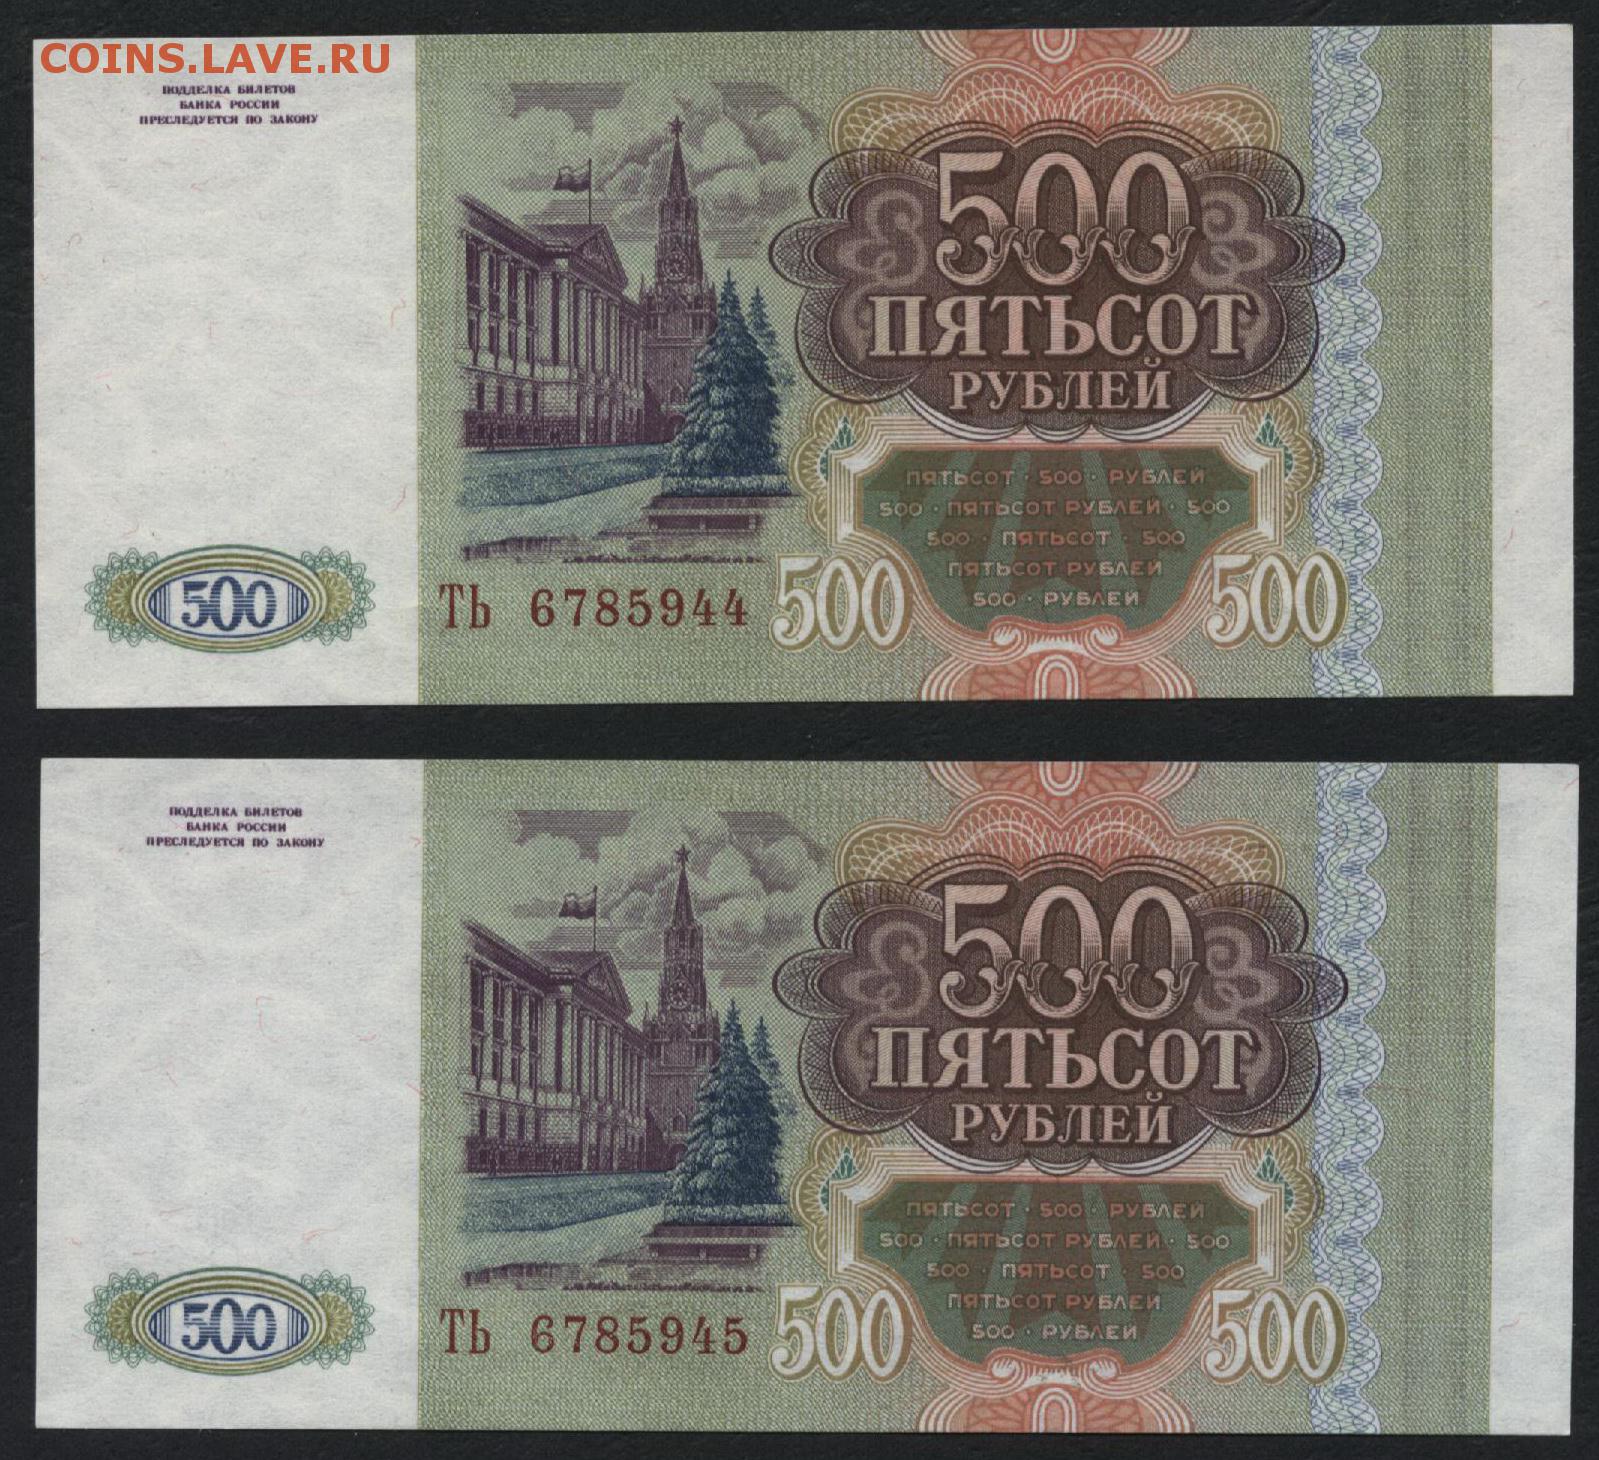 16 500 в рублях. 500 Рублей. 500 Рублей 1993. Пятьсот рублей 1993. 500 Рублей 1993 года.